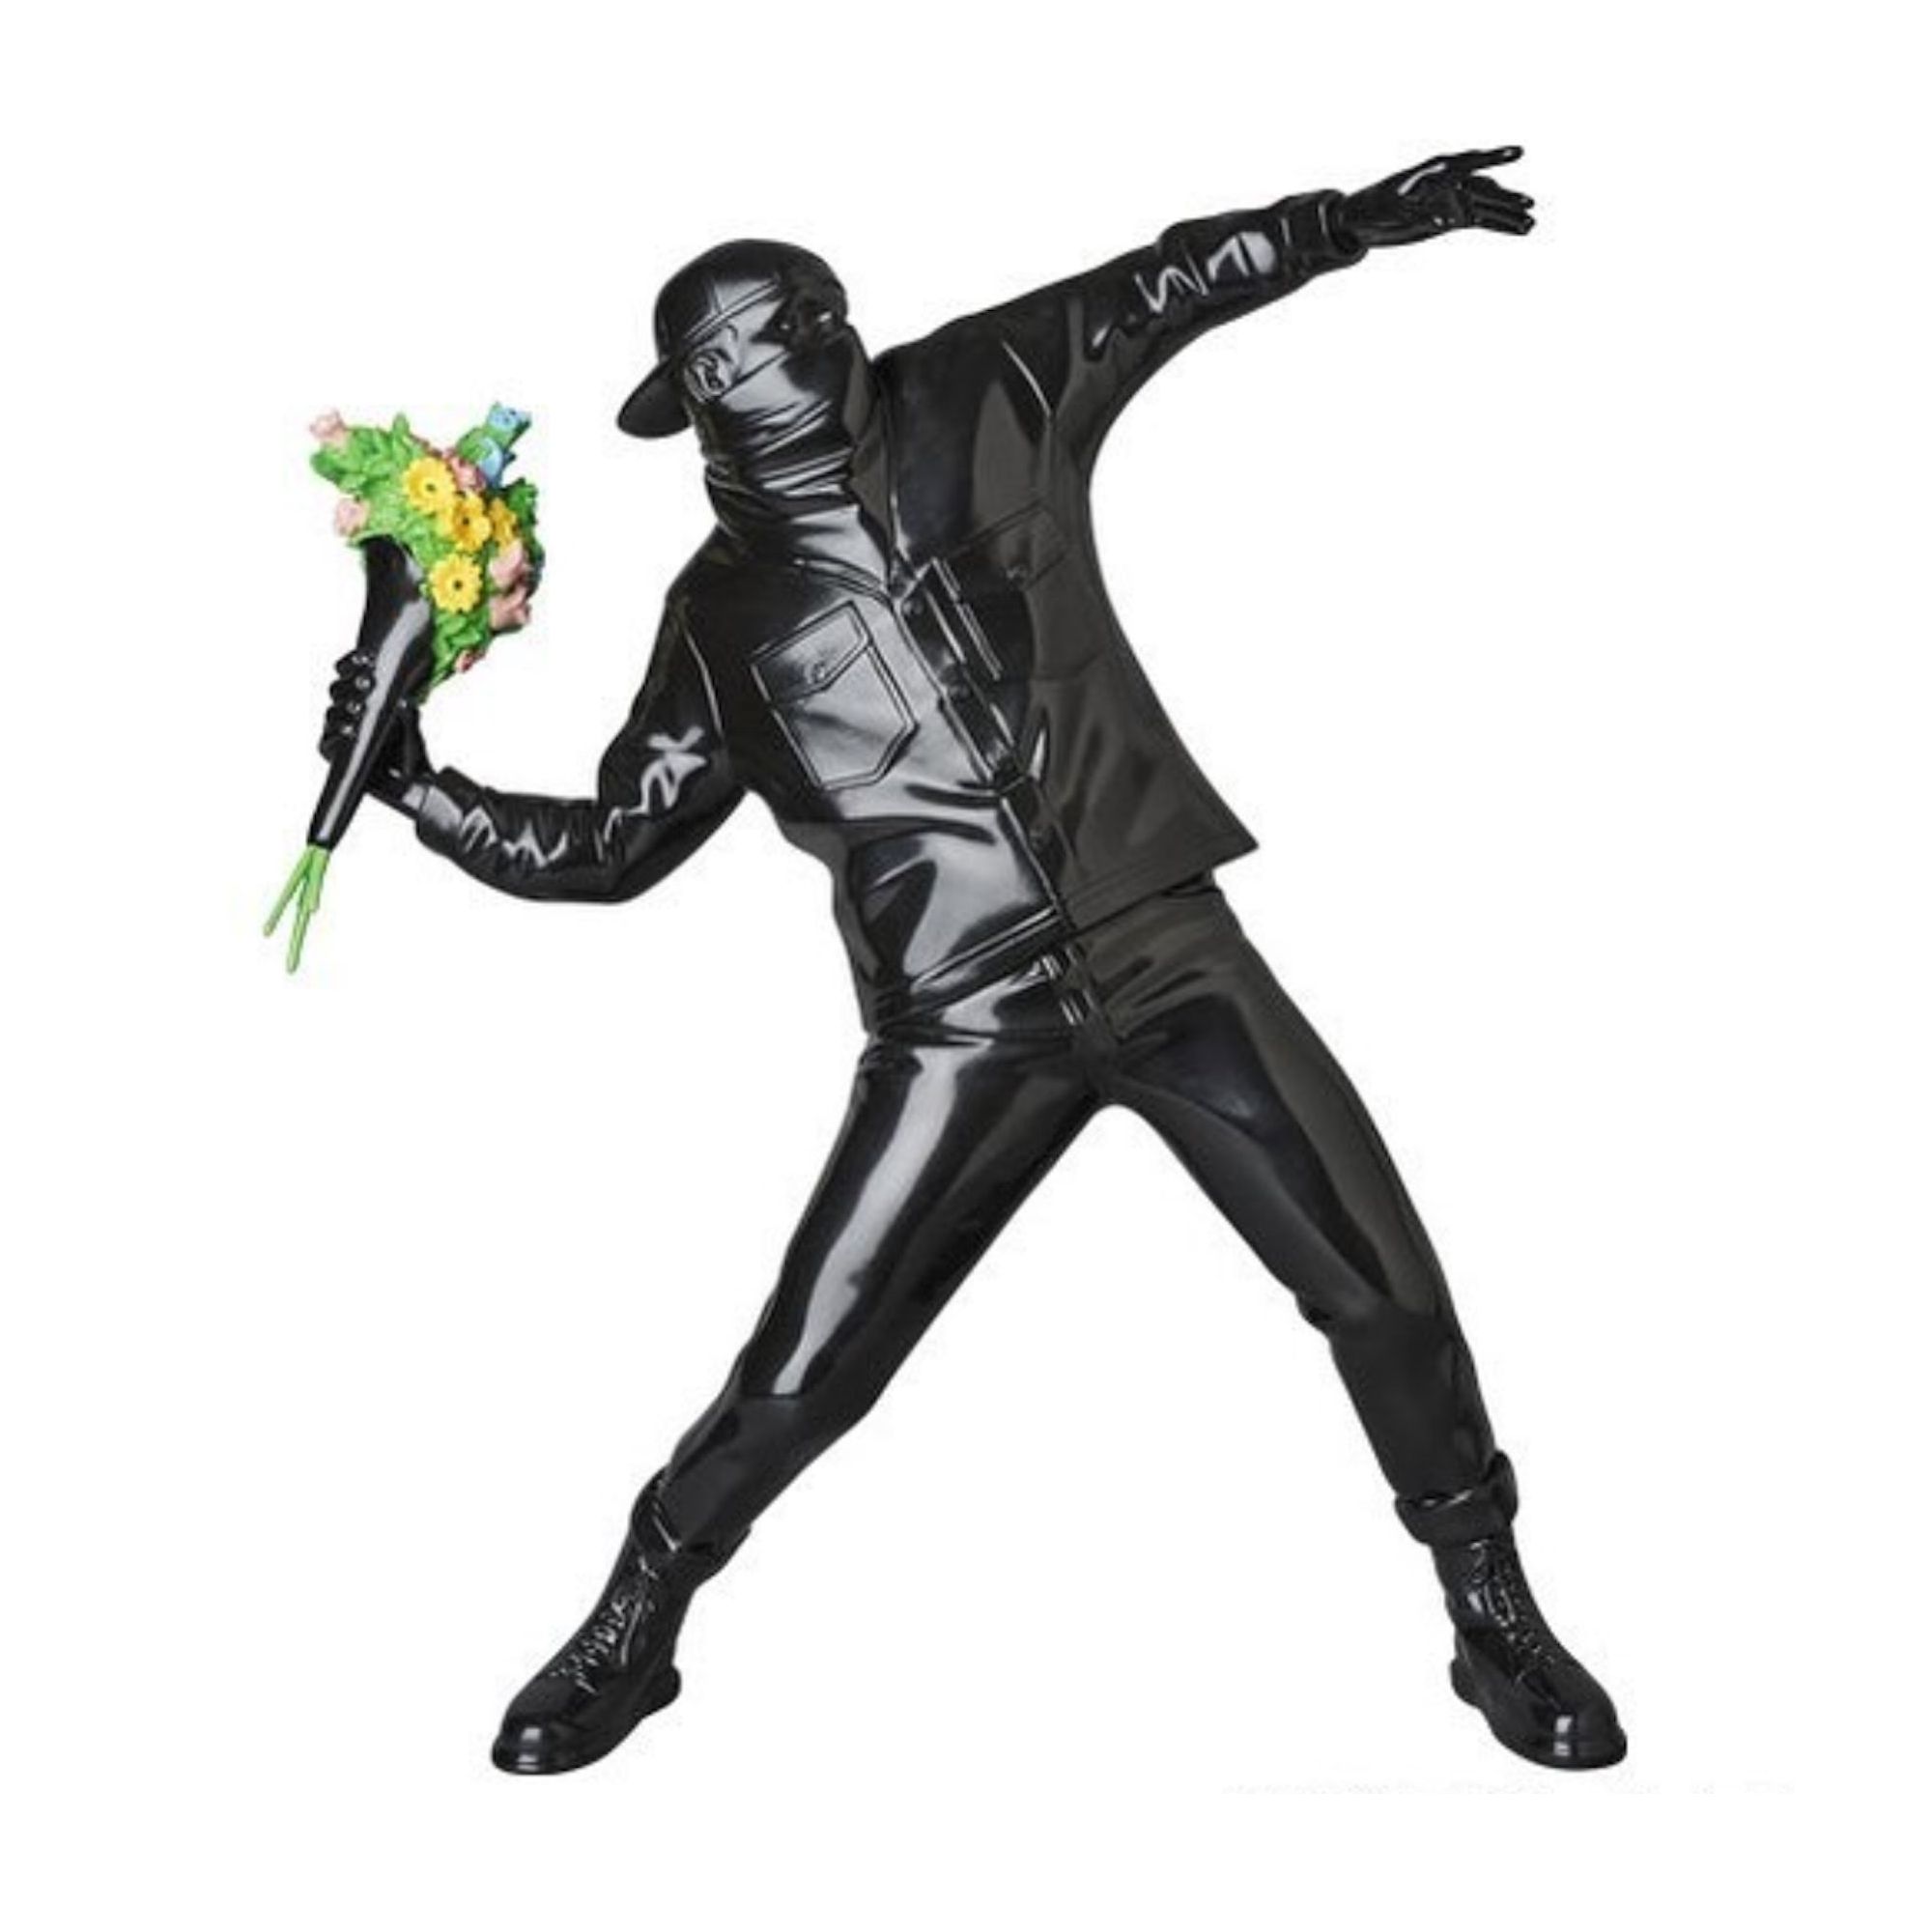 Фигурка Banksy Brandalism Flower Bomber, черный фигурка совместимая с лего мисс бэнкси teknique из игры фортнайт